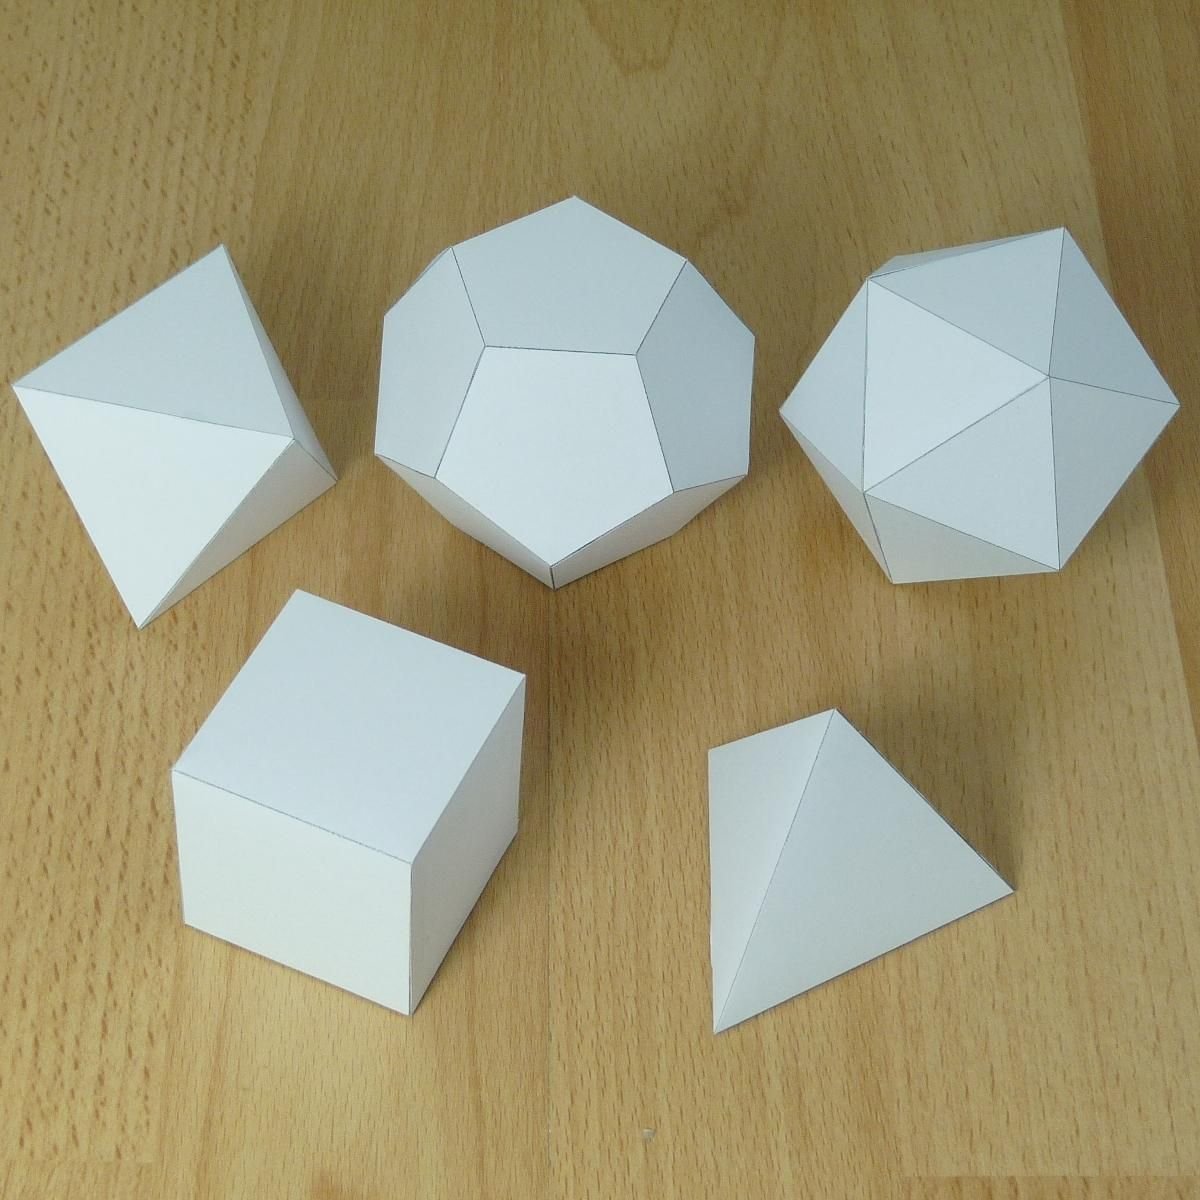 Как сделать объемную фигуру. Геометрические фигуры из бумаги. Объемные геометрические фигуры из бумаги. Моделирование геометрических фигур из бумаги. Объемный многогранник.